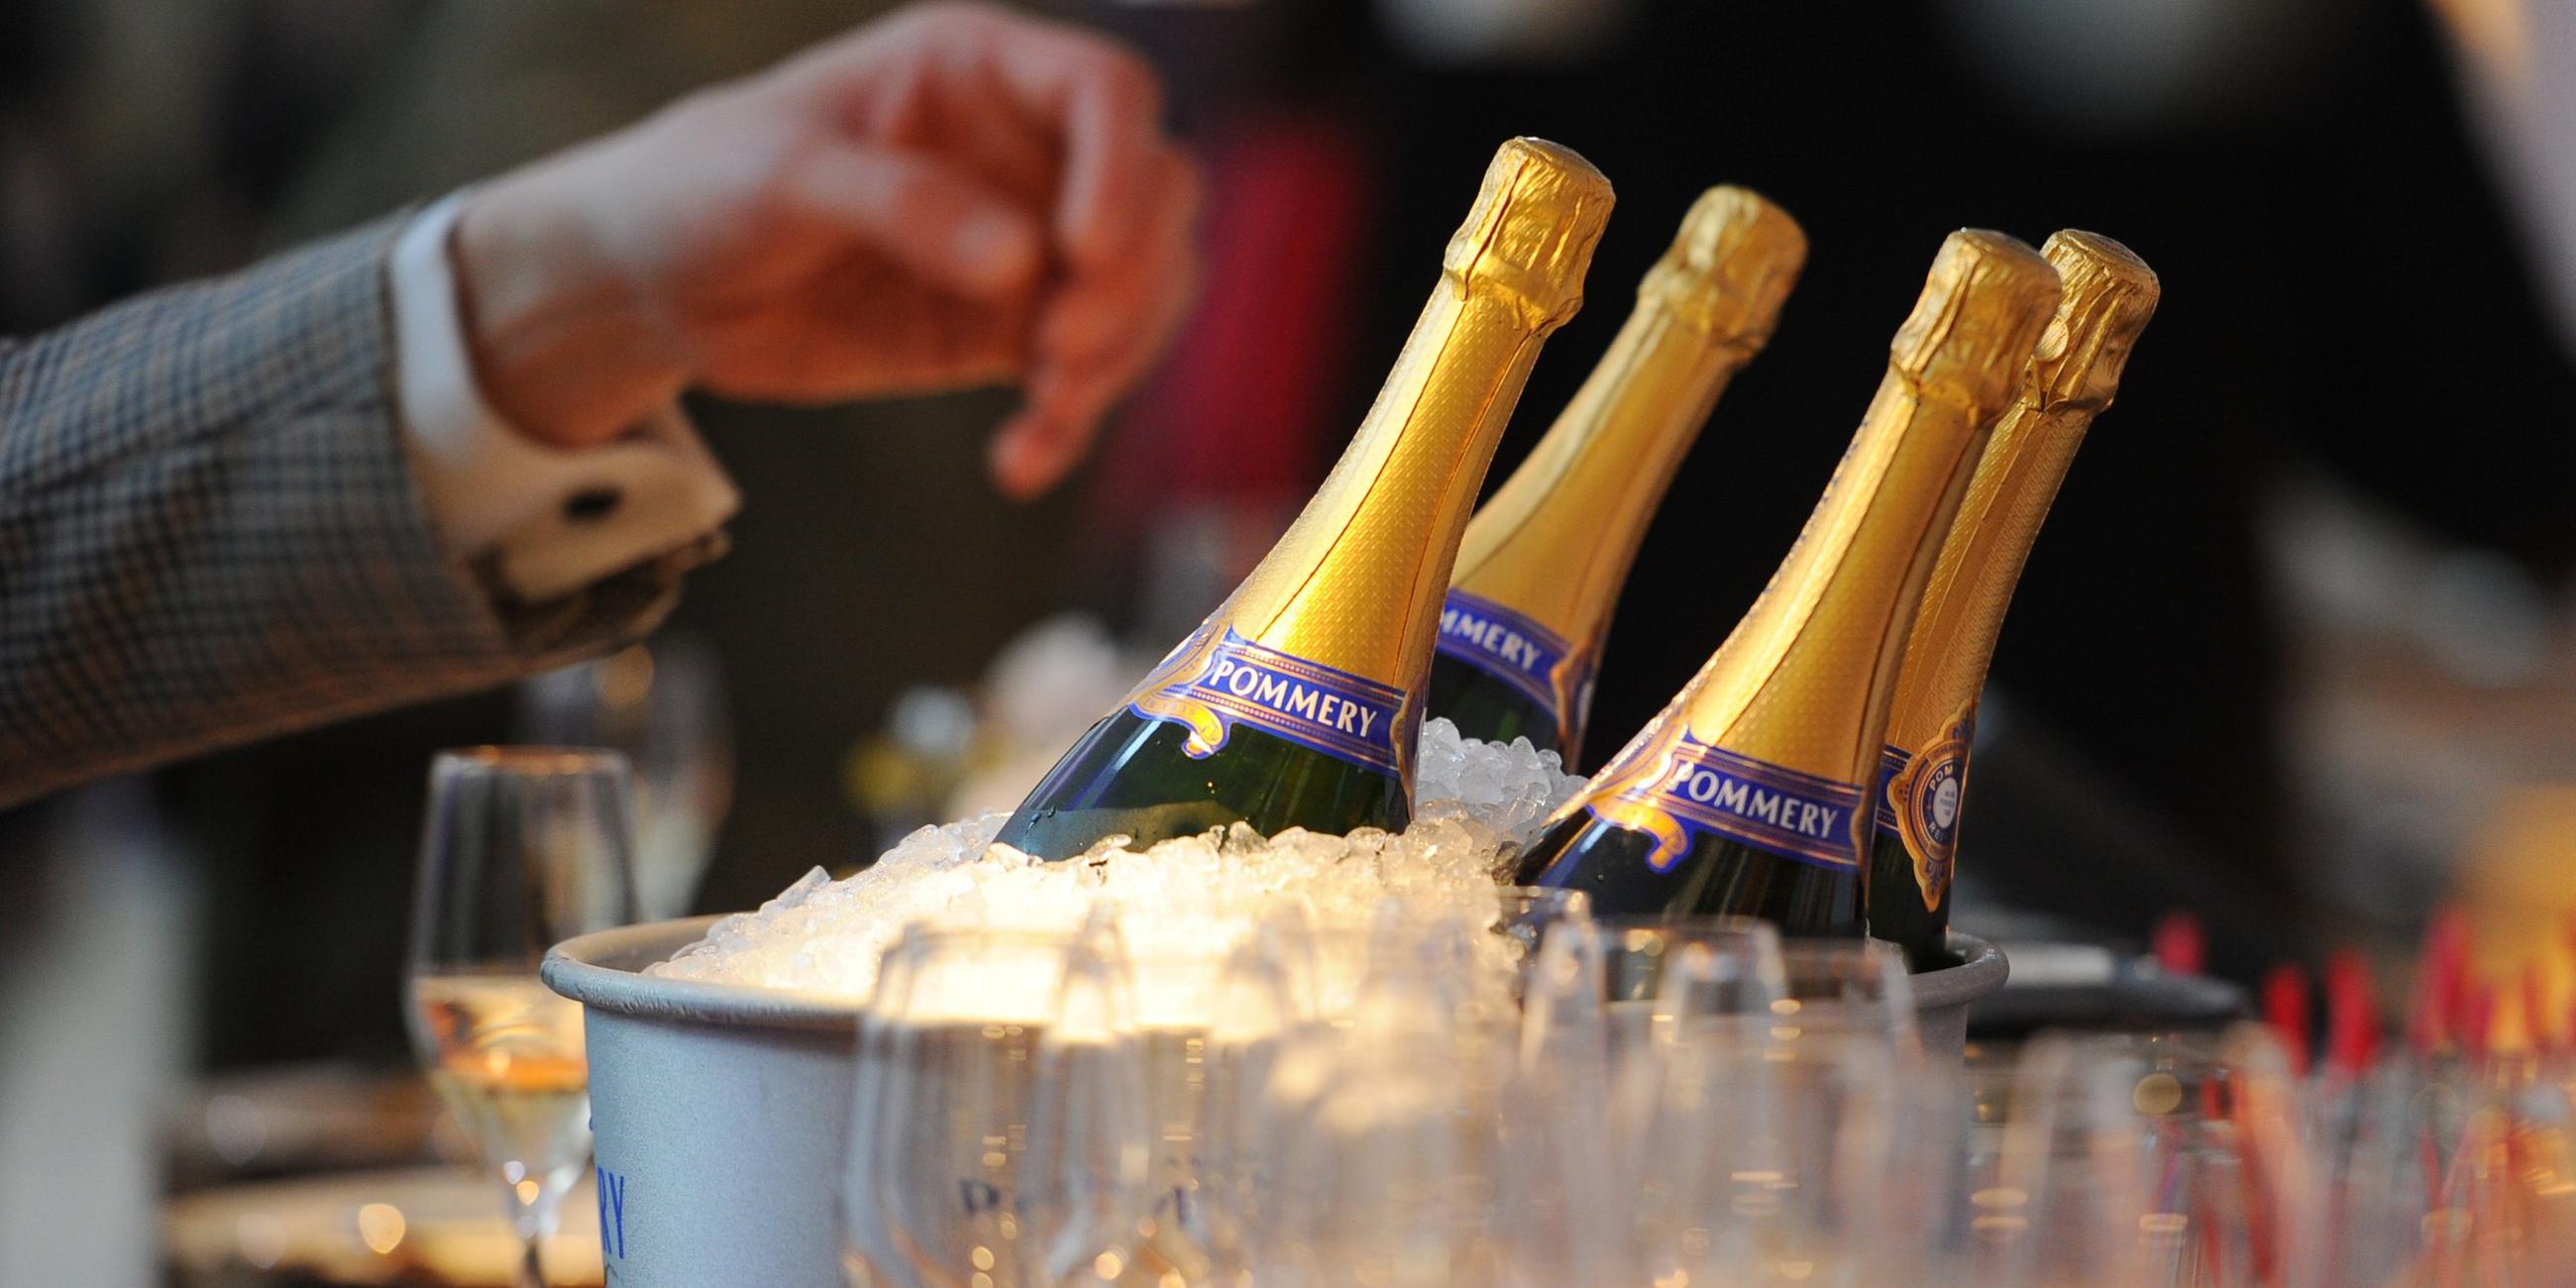 Vier Champagnerflaschen stehen auf einem Tisch in einem Champagnerkühler neben einigen Gläsern.